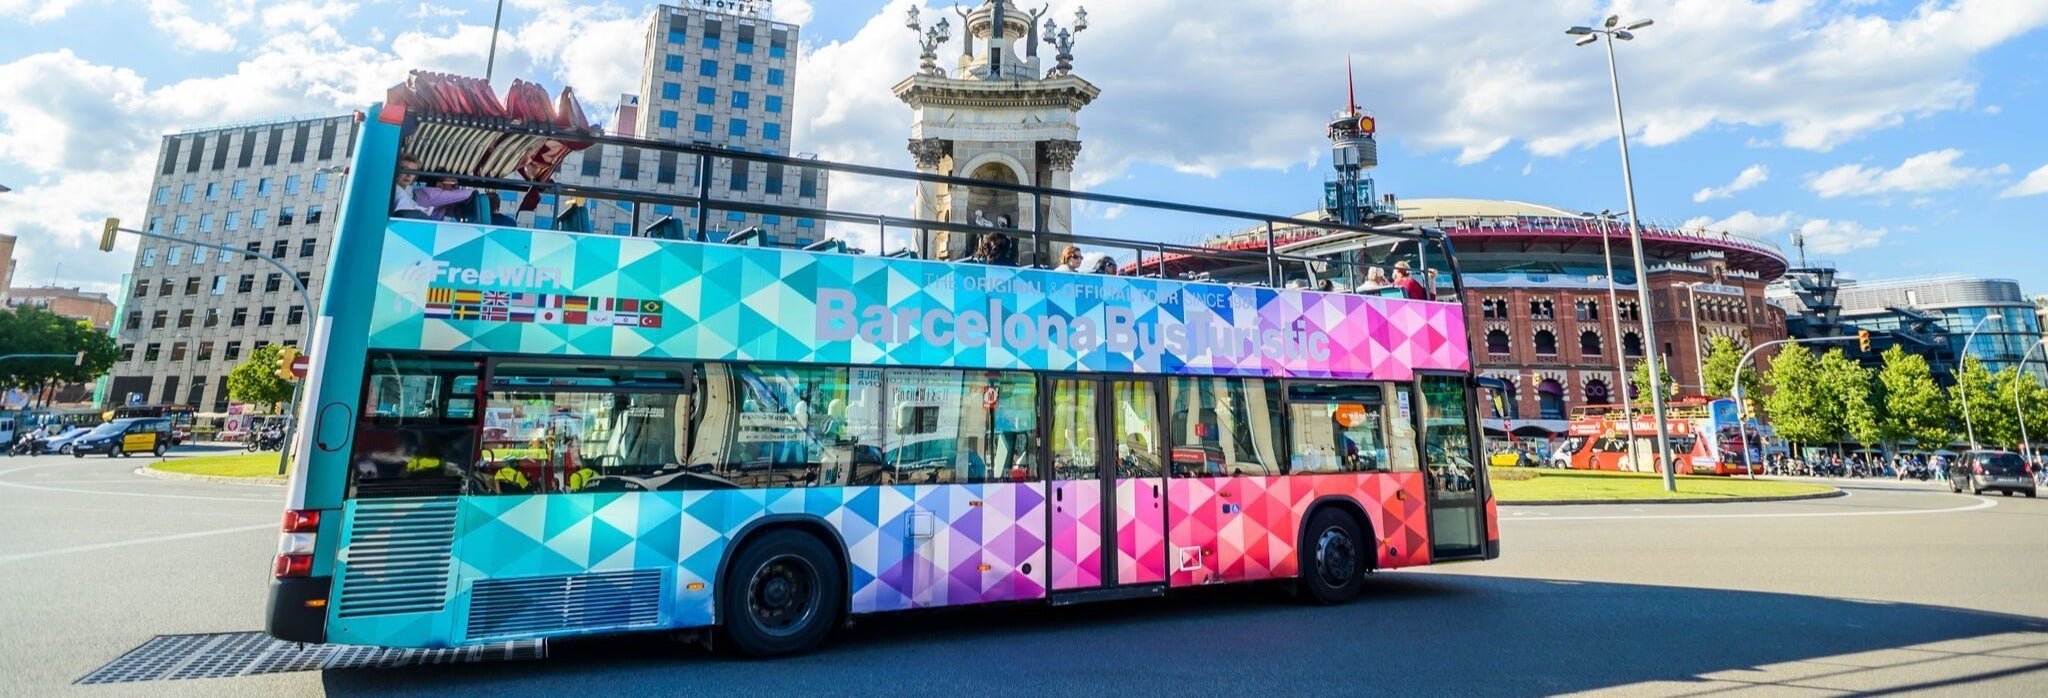 Ônibus turístico de Barcelona